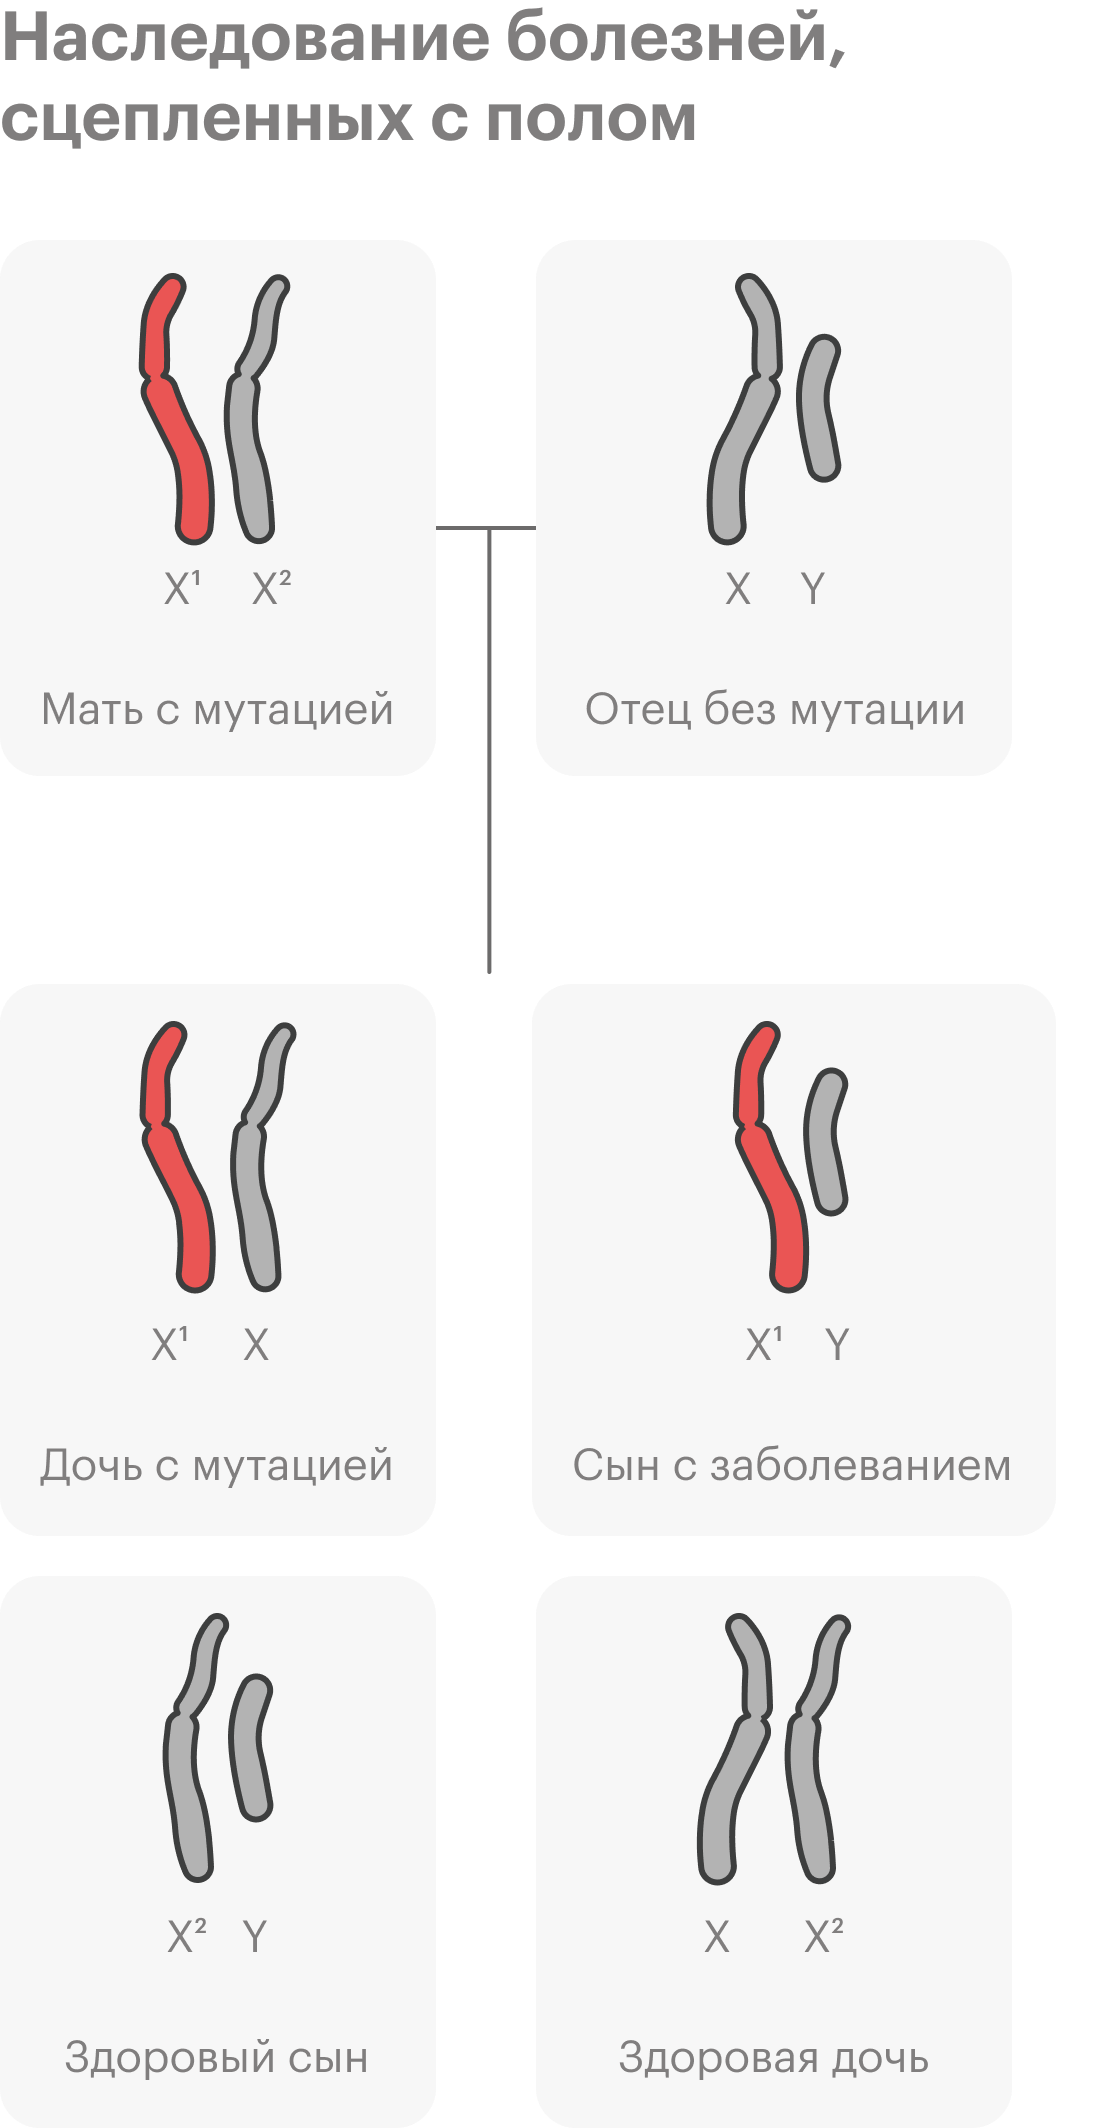 Еще один вариант наследования — наследование, сцепленное с полом. Самый известный пример заболевания, сцепленного с полом — гемофилия. Упрощенно говоря, есть гены, связанные с половыми хромосомами. У человека заболевания обычно связаны с женской X⁠-⁠хромосомой. Если одна из копий гена, сцепленного с X⁠-⁠хромосомой, может вызывать болезнь, болеть будут в основном мальчики. У девочек две X⁠-⁠хромосомы — даже если одна с мутацией, есть второй, здоровый ген, и признак не проявляется. Но они будут носительницами заболевания и могут передать его своим сыновьям